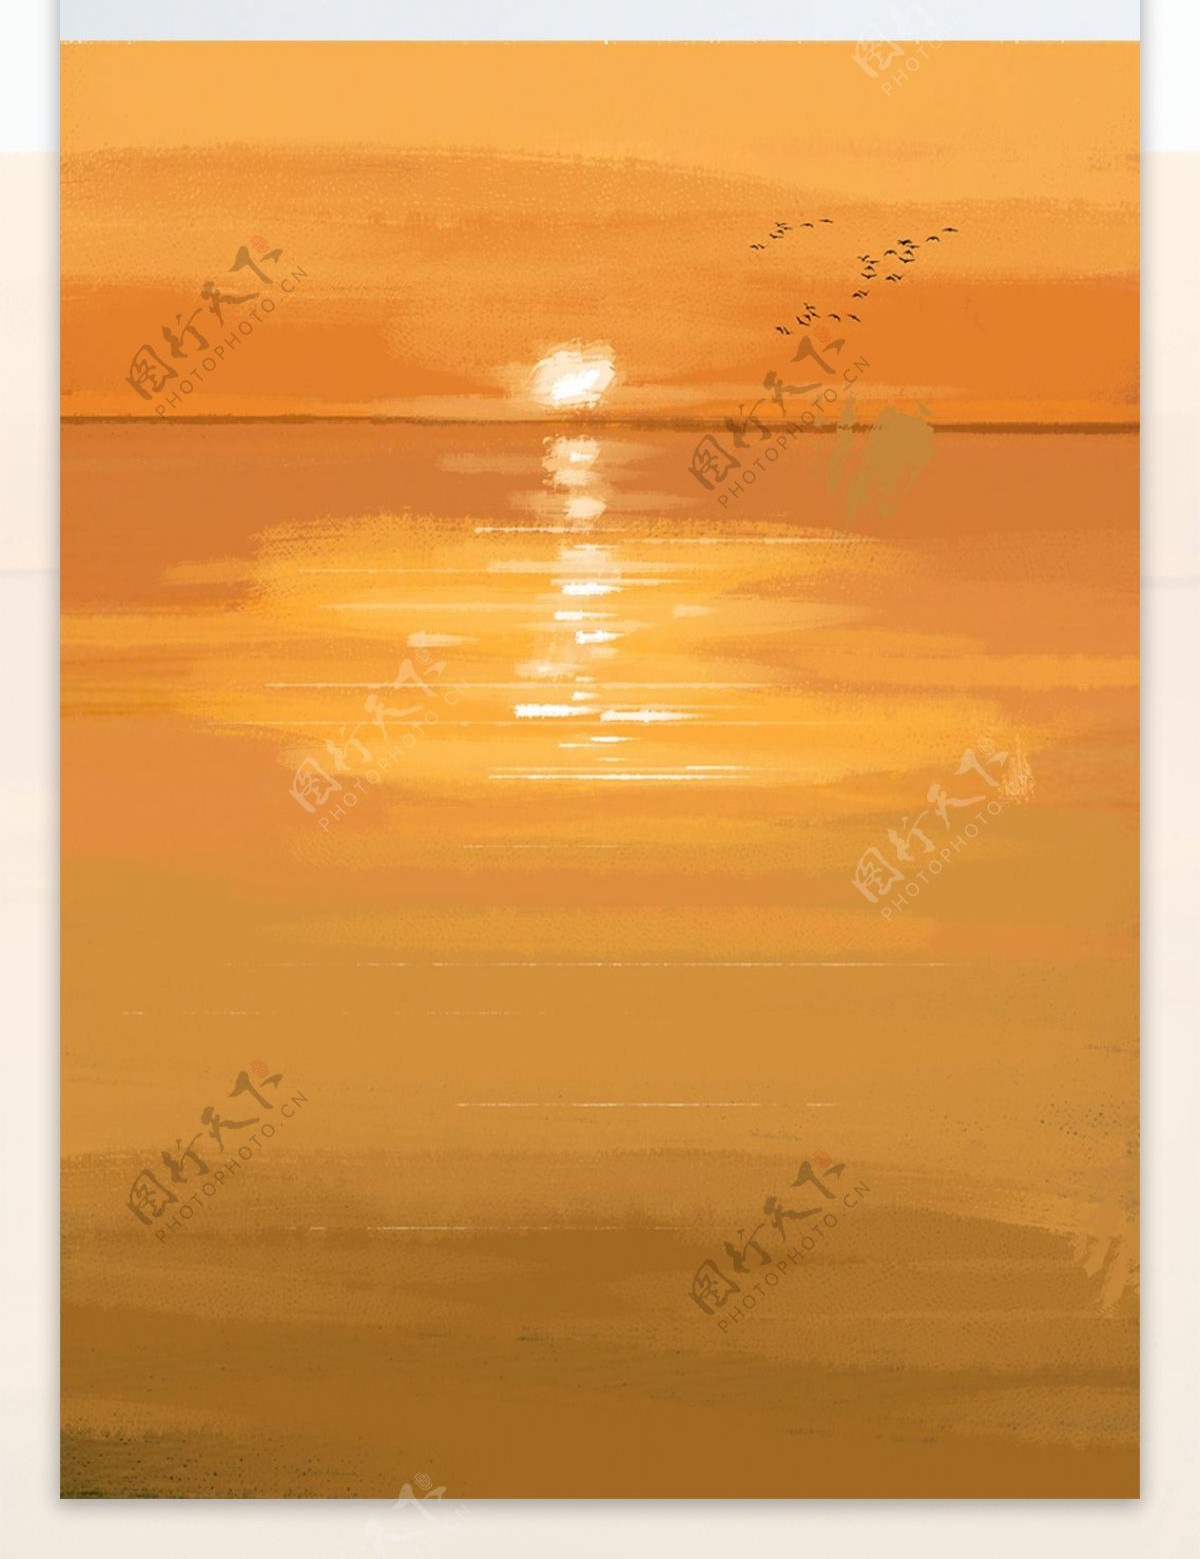 现代简约手绘油画海面夕阳装饰画